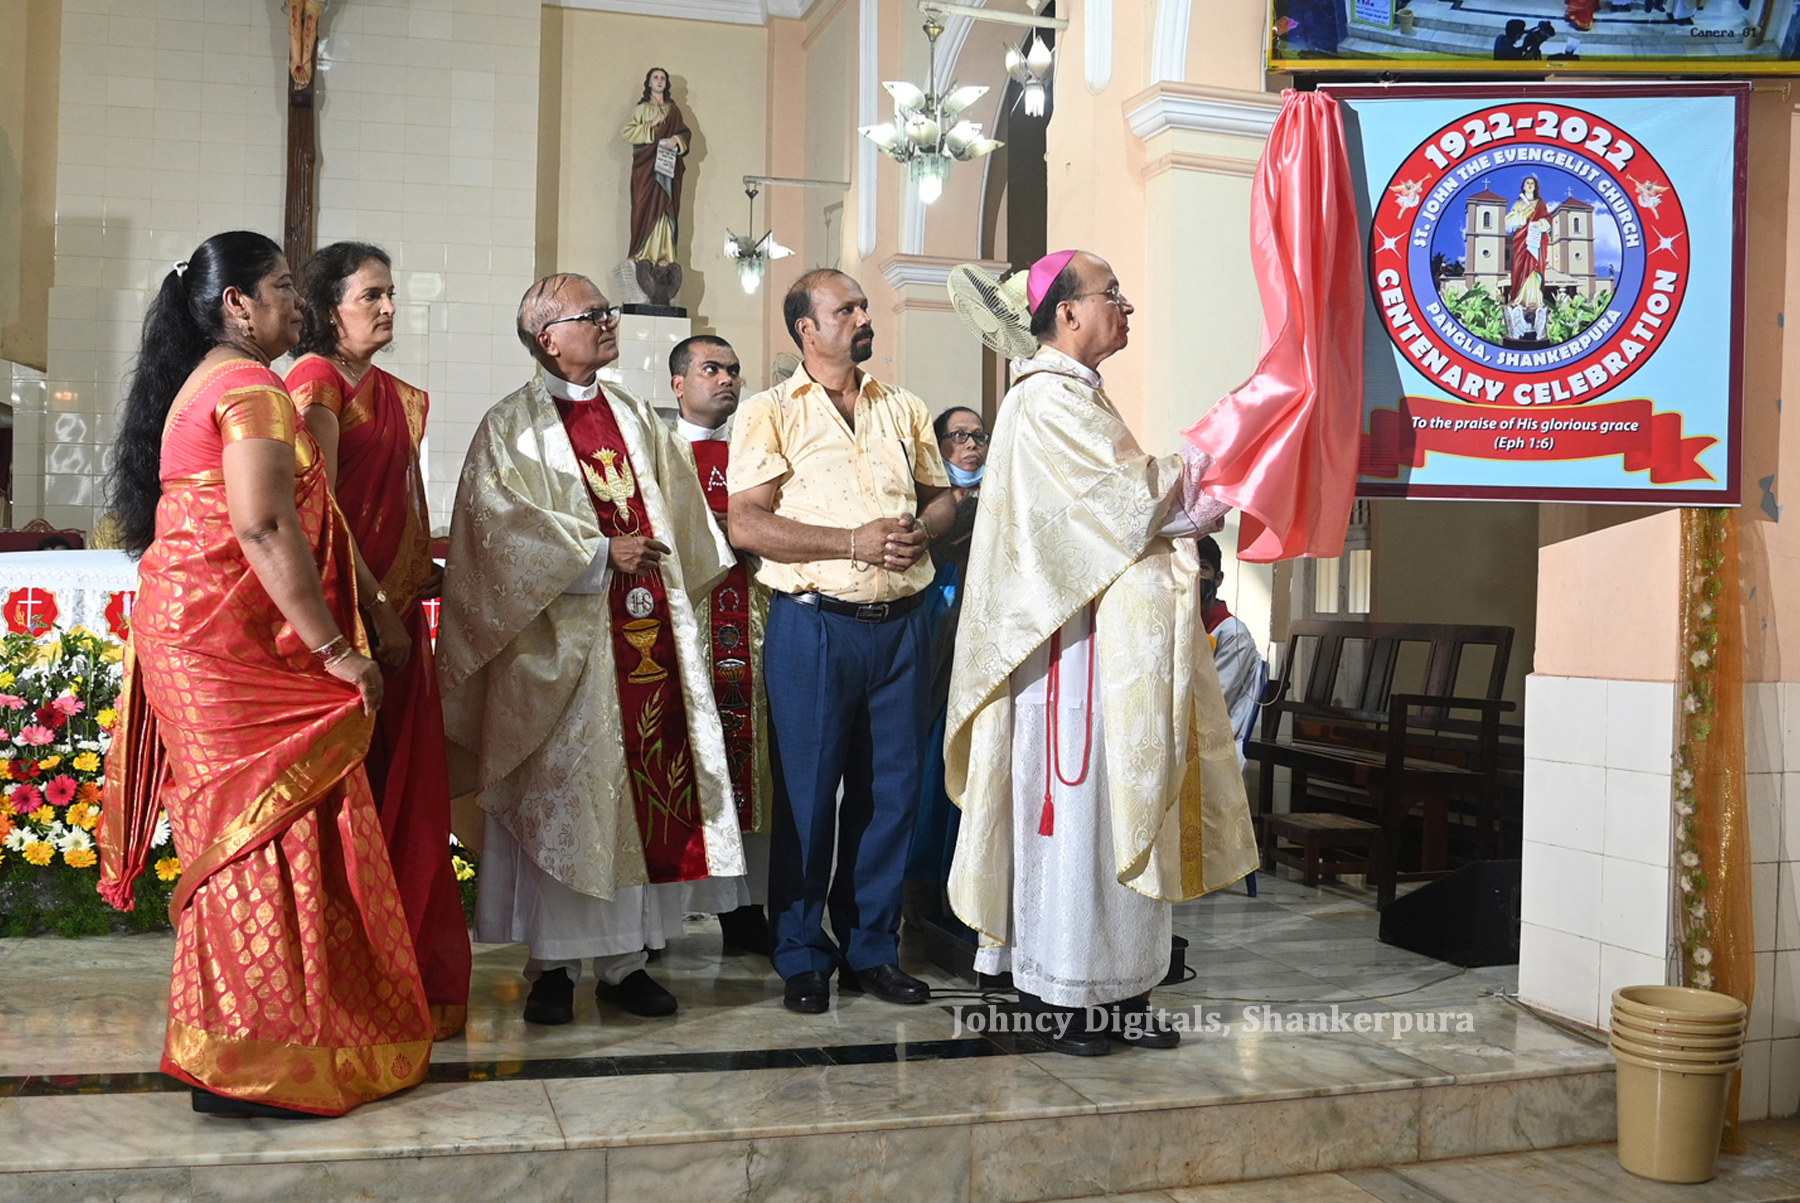 The Inauguration Ceremony of the Centenary year of St John the Evangelist Church Shankerpura